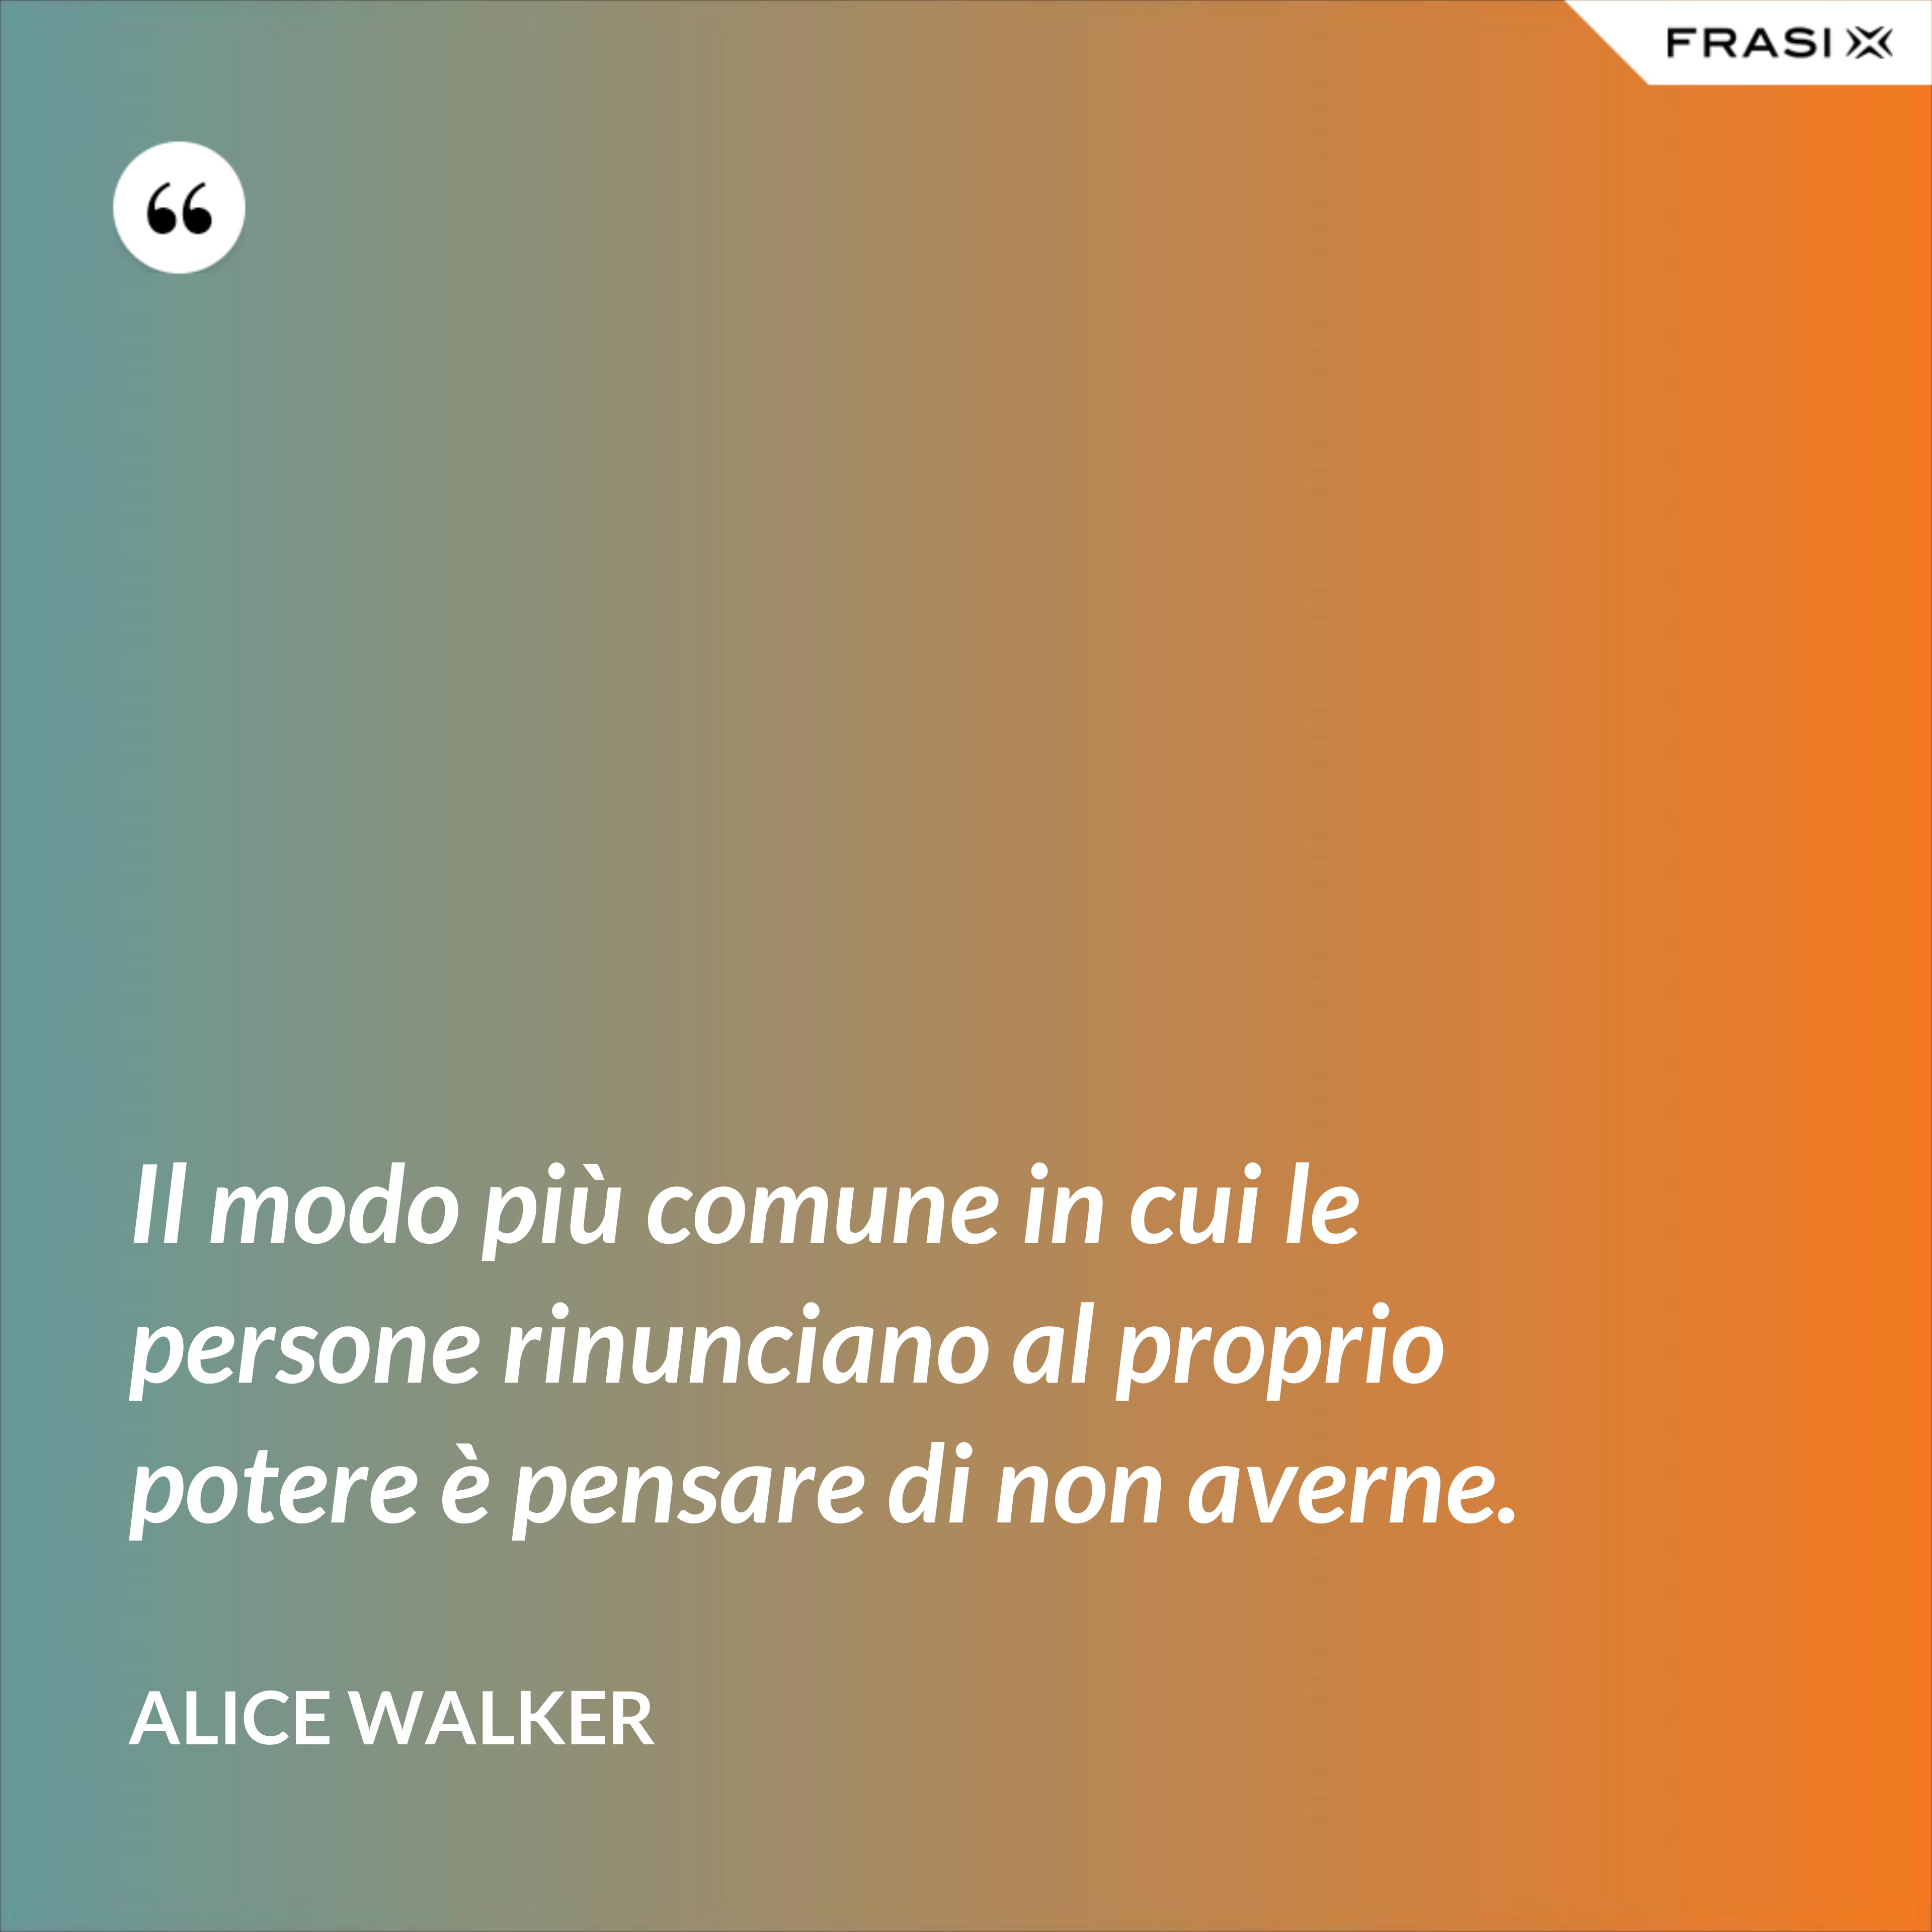 Il modo più comune in cui le persone rinunciano al proprio potere è pensare di non averne. - Alice Walker